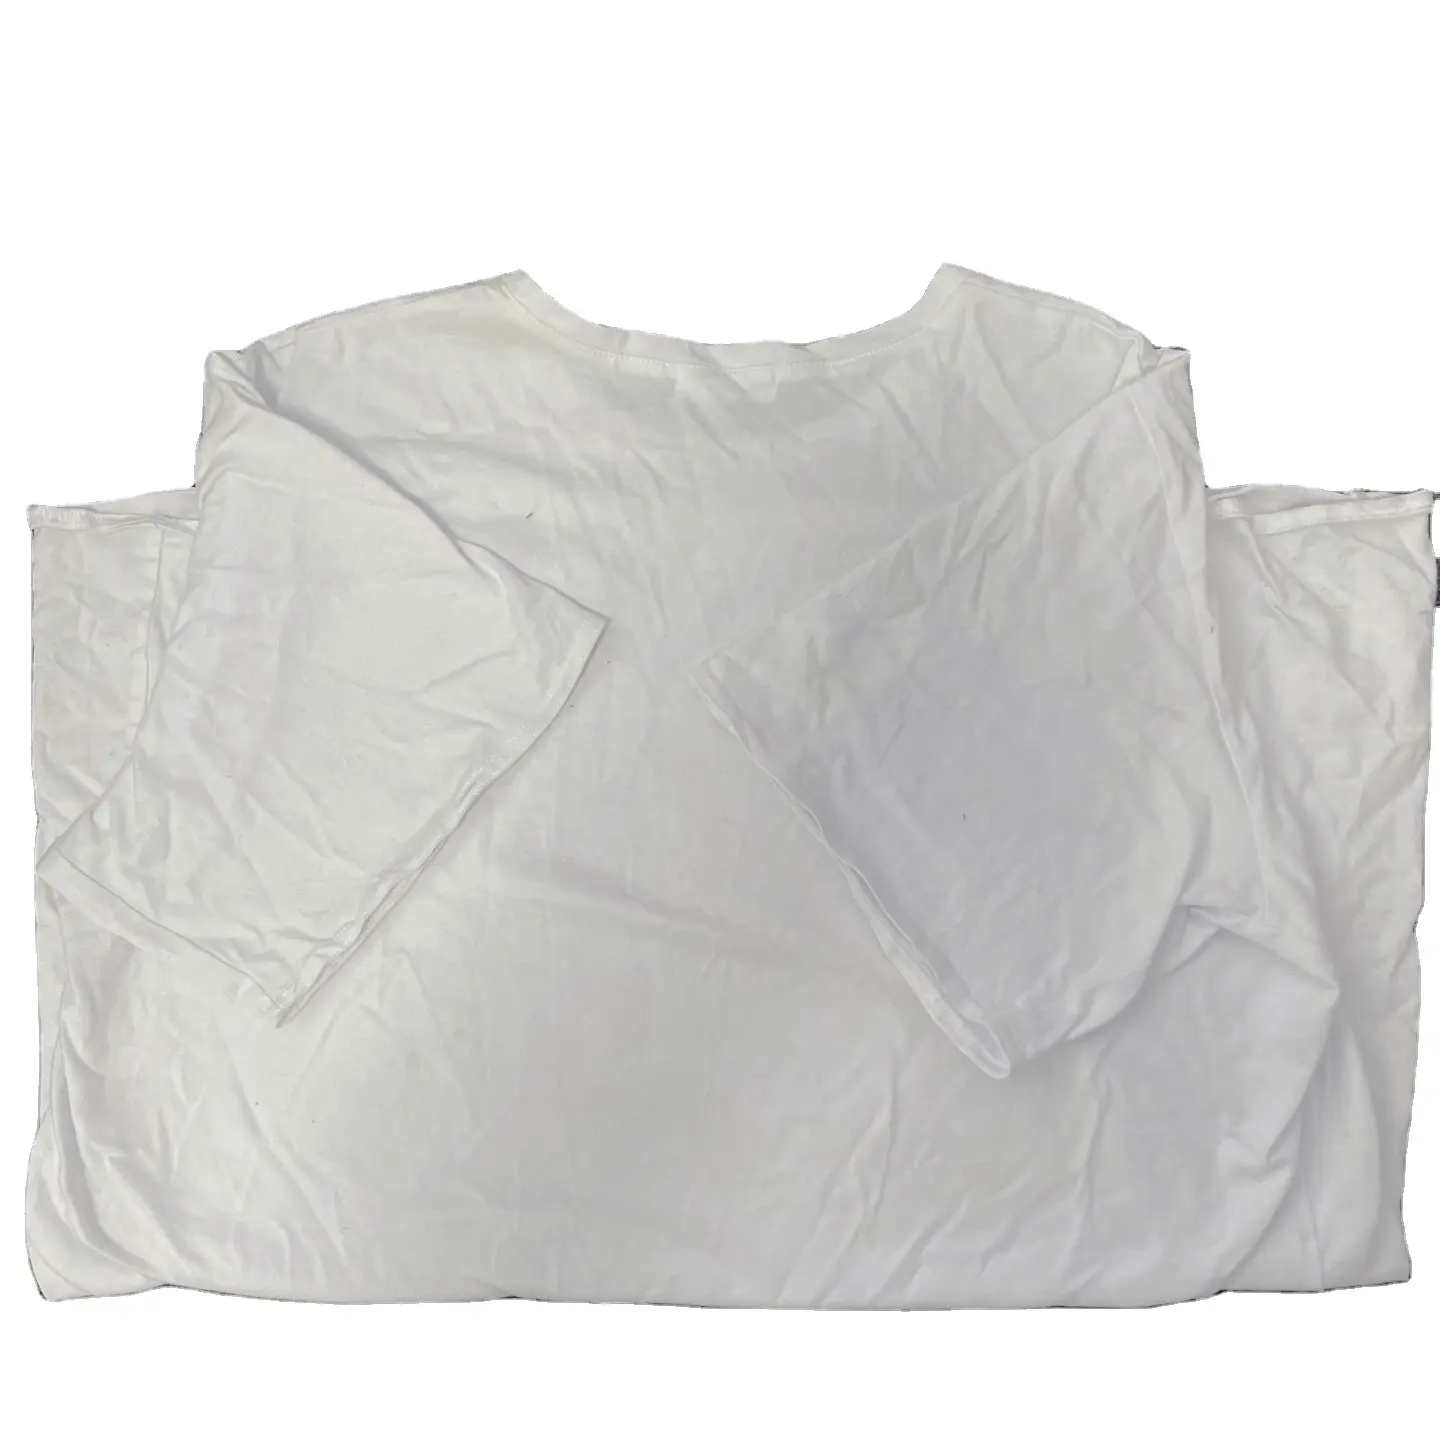 Stracci per pulire in cotone bianco di alta qualità 20-60cm 10kg balle lavaggio industriale straccio colore bianco maglietta mista cotone